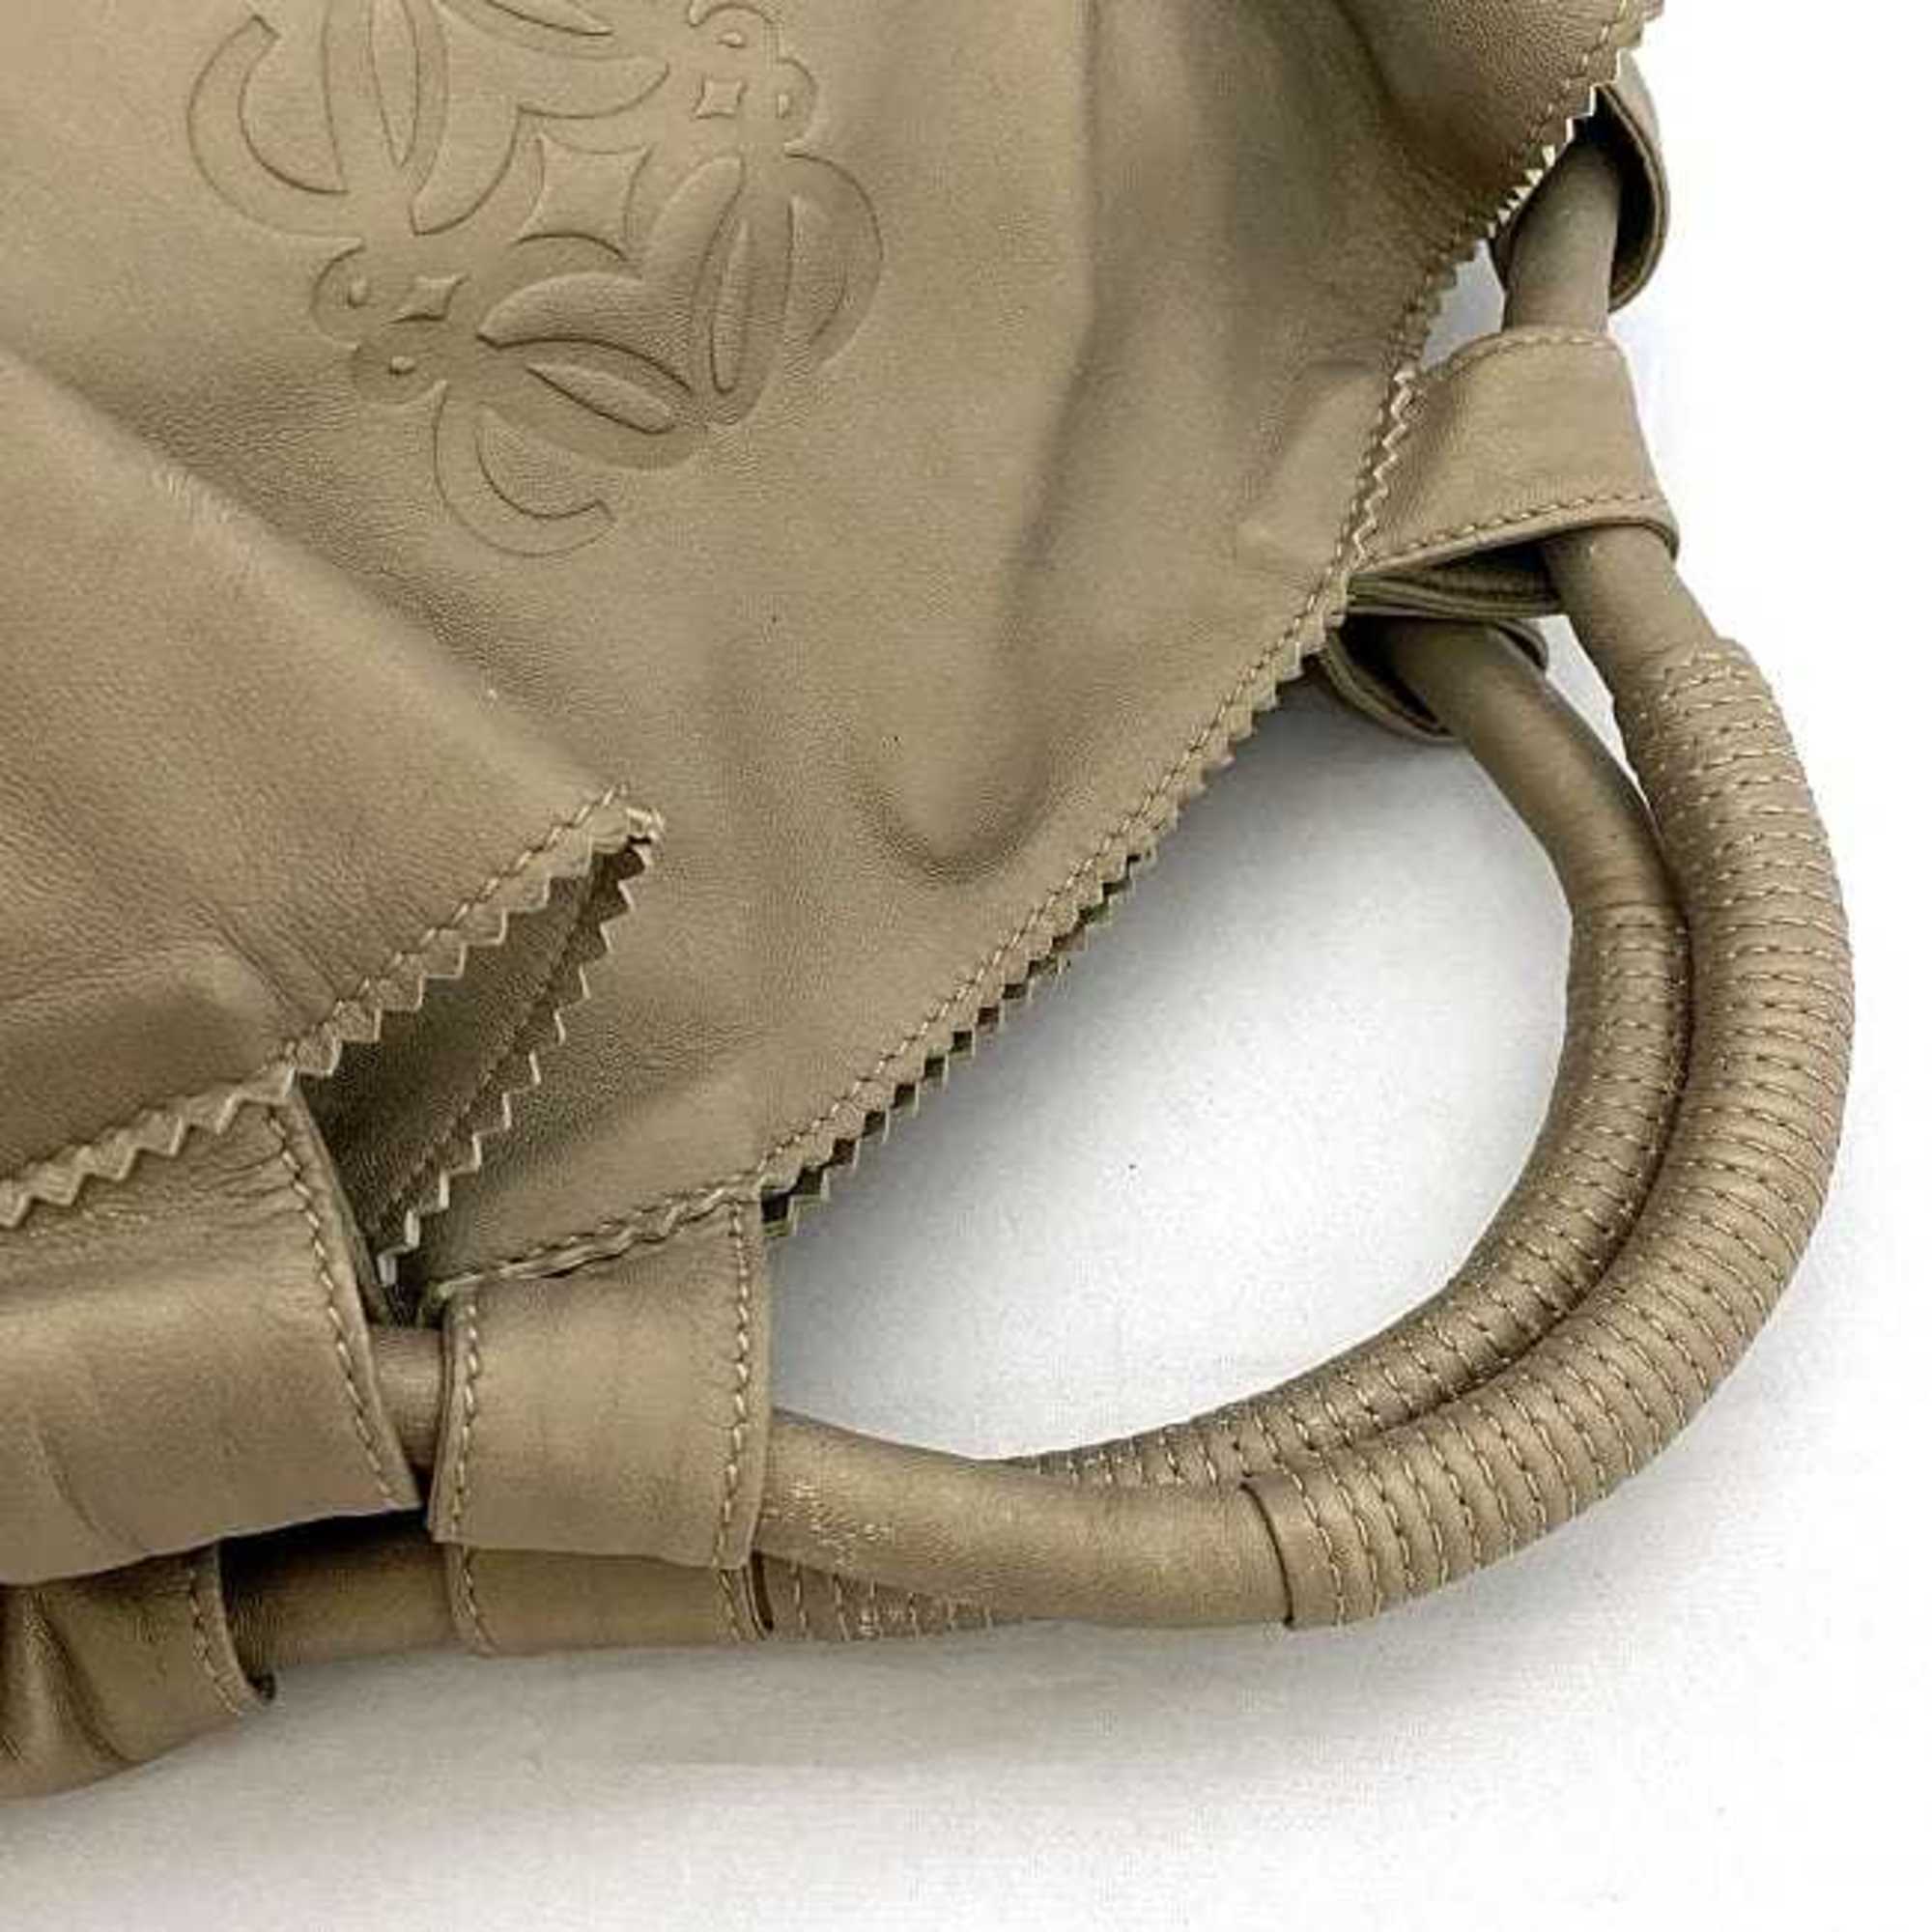 Loewe Handbag Nappa Aire Gold Anagram Leather LOEWE Tote Bag Soft Ladies